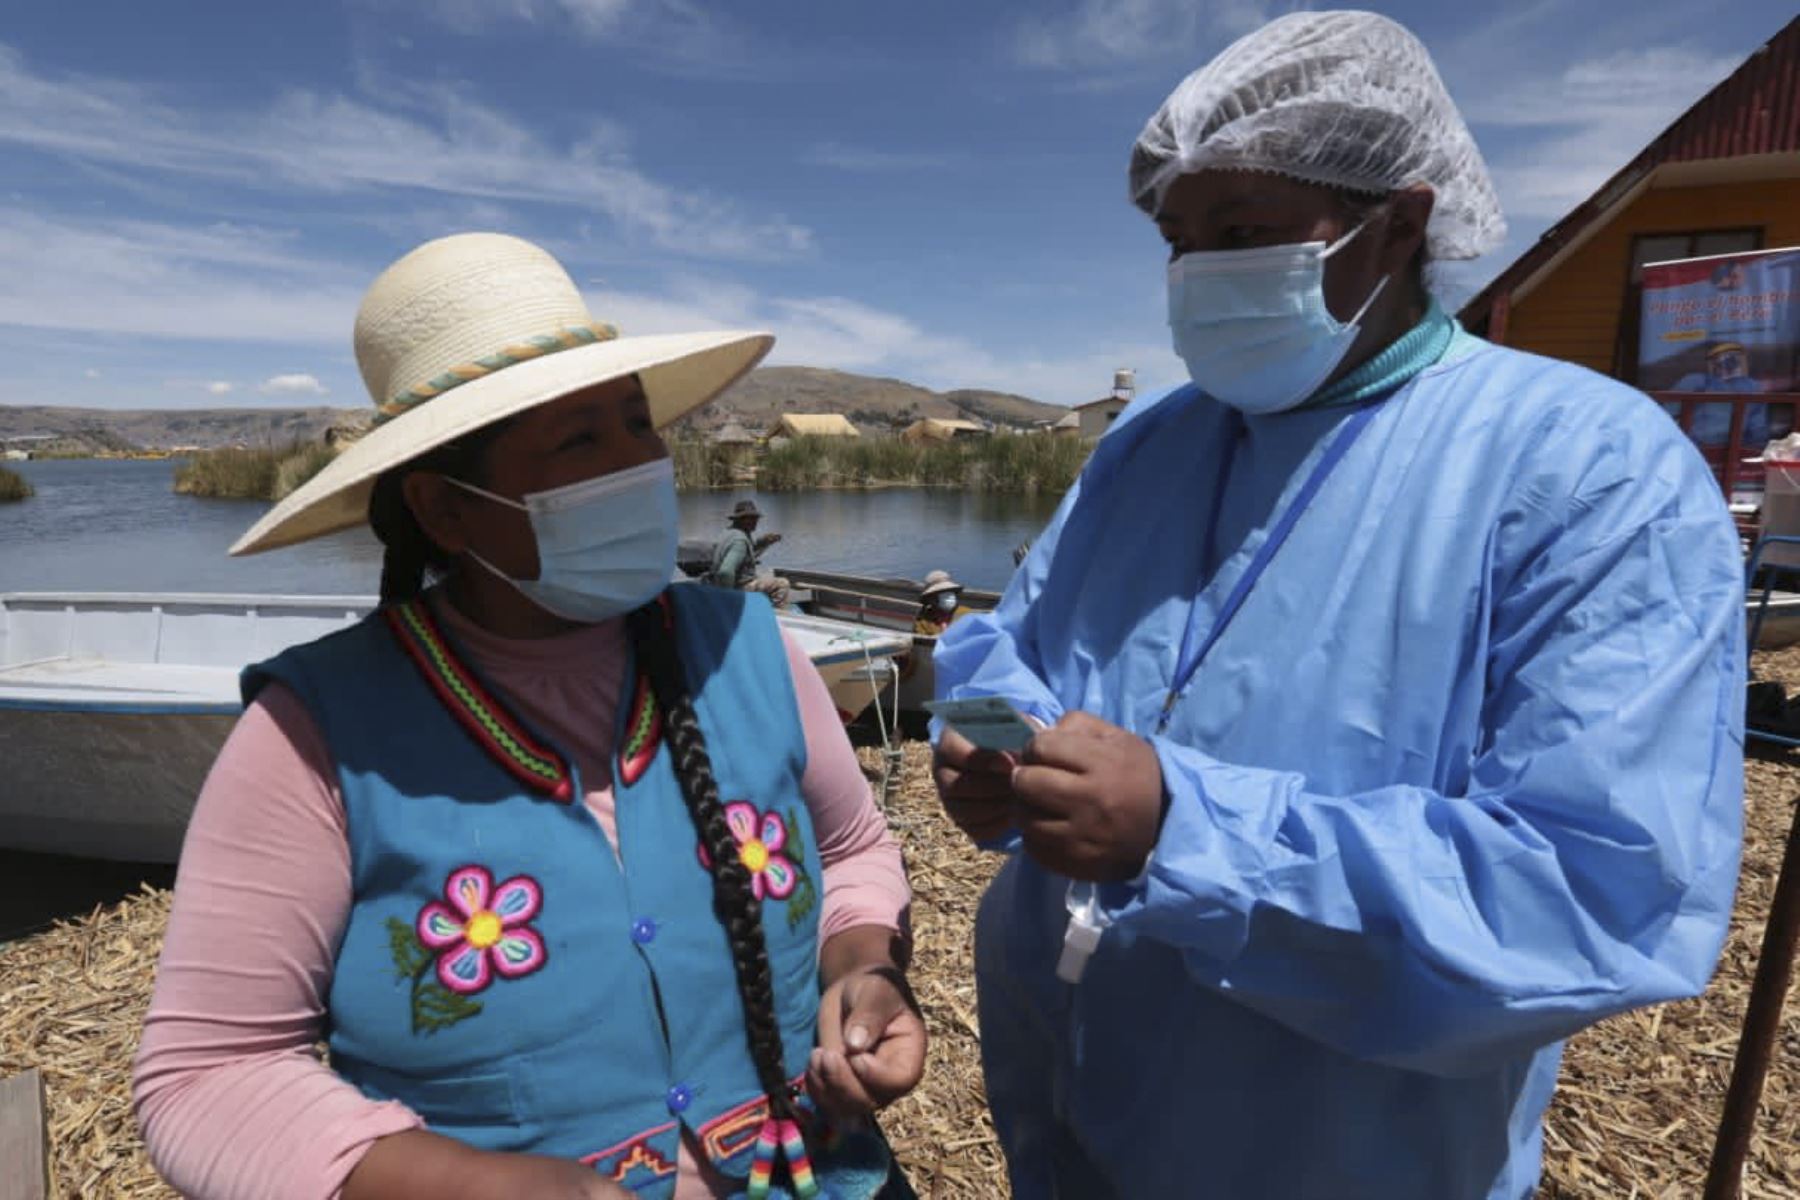 Brigadas de la Red de Salud Puno del Minsa, vacunan contra la covid-19 a las pobladores de las islas flotantes de Los Uros, ubicados en el Lago Titicaca (Puno) como parte de la estrategia “Vamos a tu encuentro, vacúnate ya”. Dicha estrategia permite llegar a las comunidades más alejadas asi como cerrar brechas. Foto: Minsa